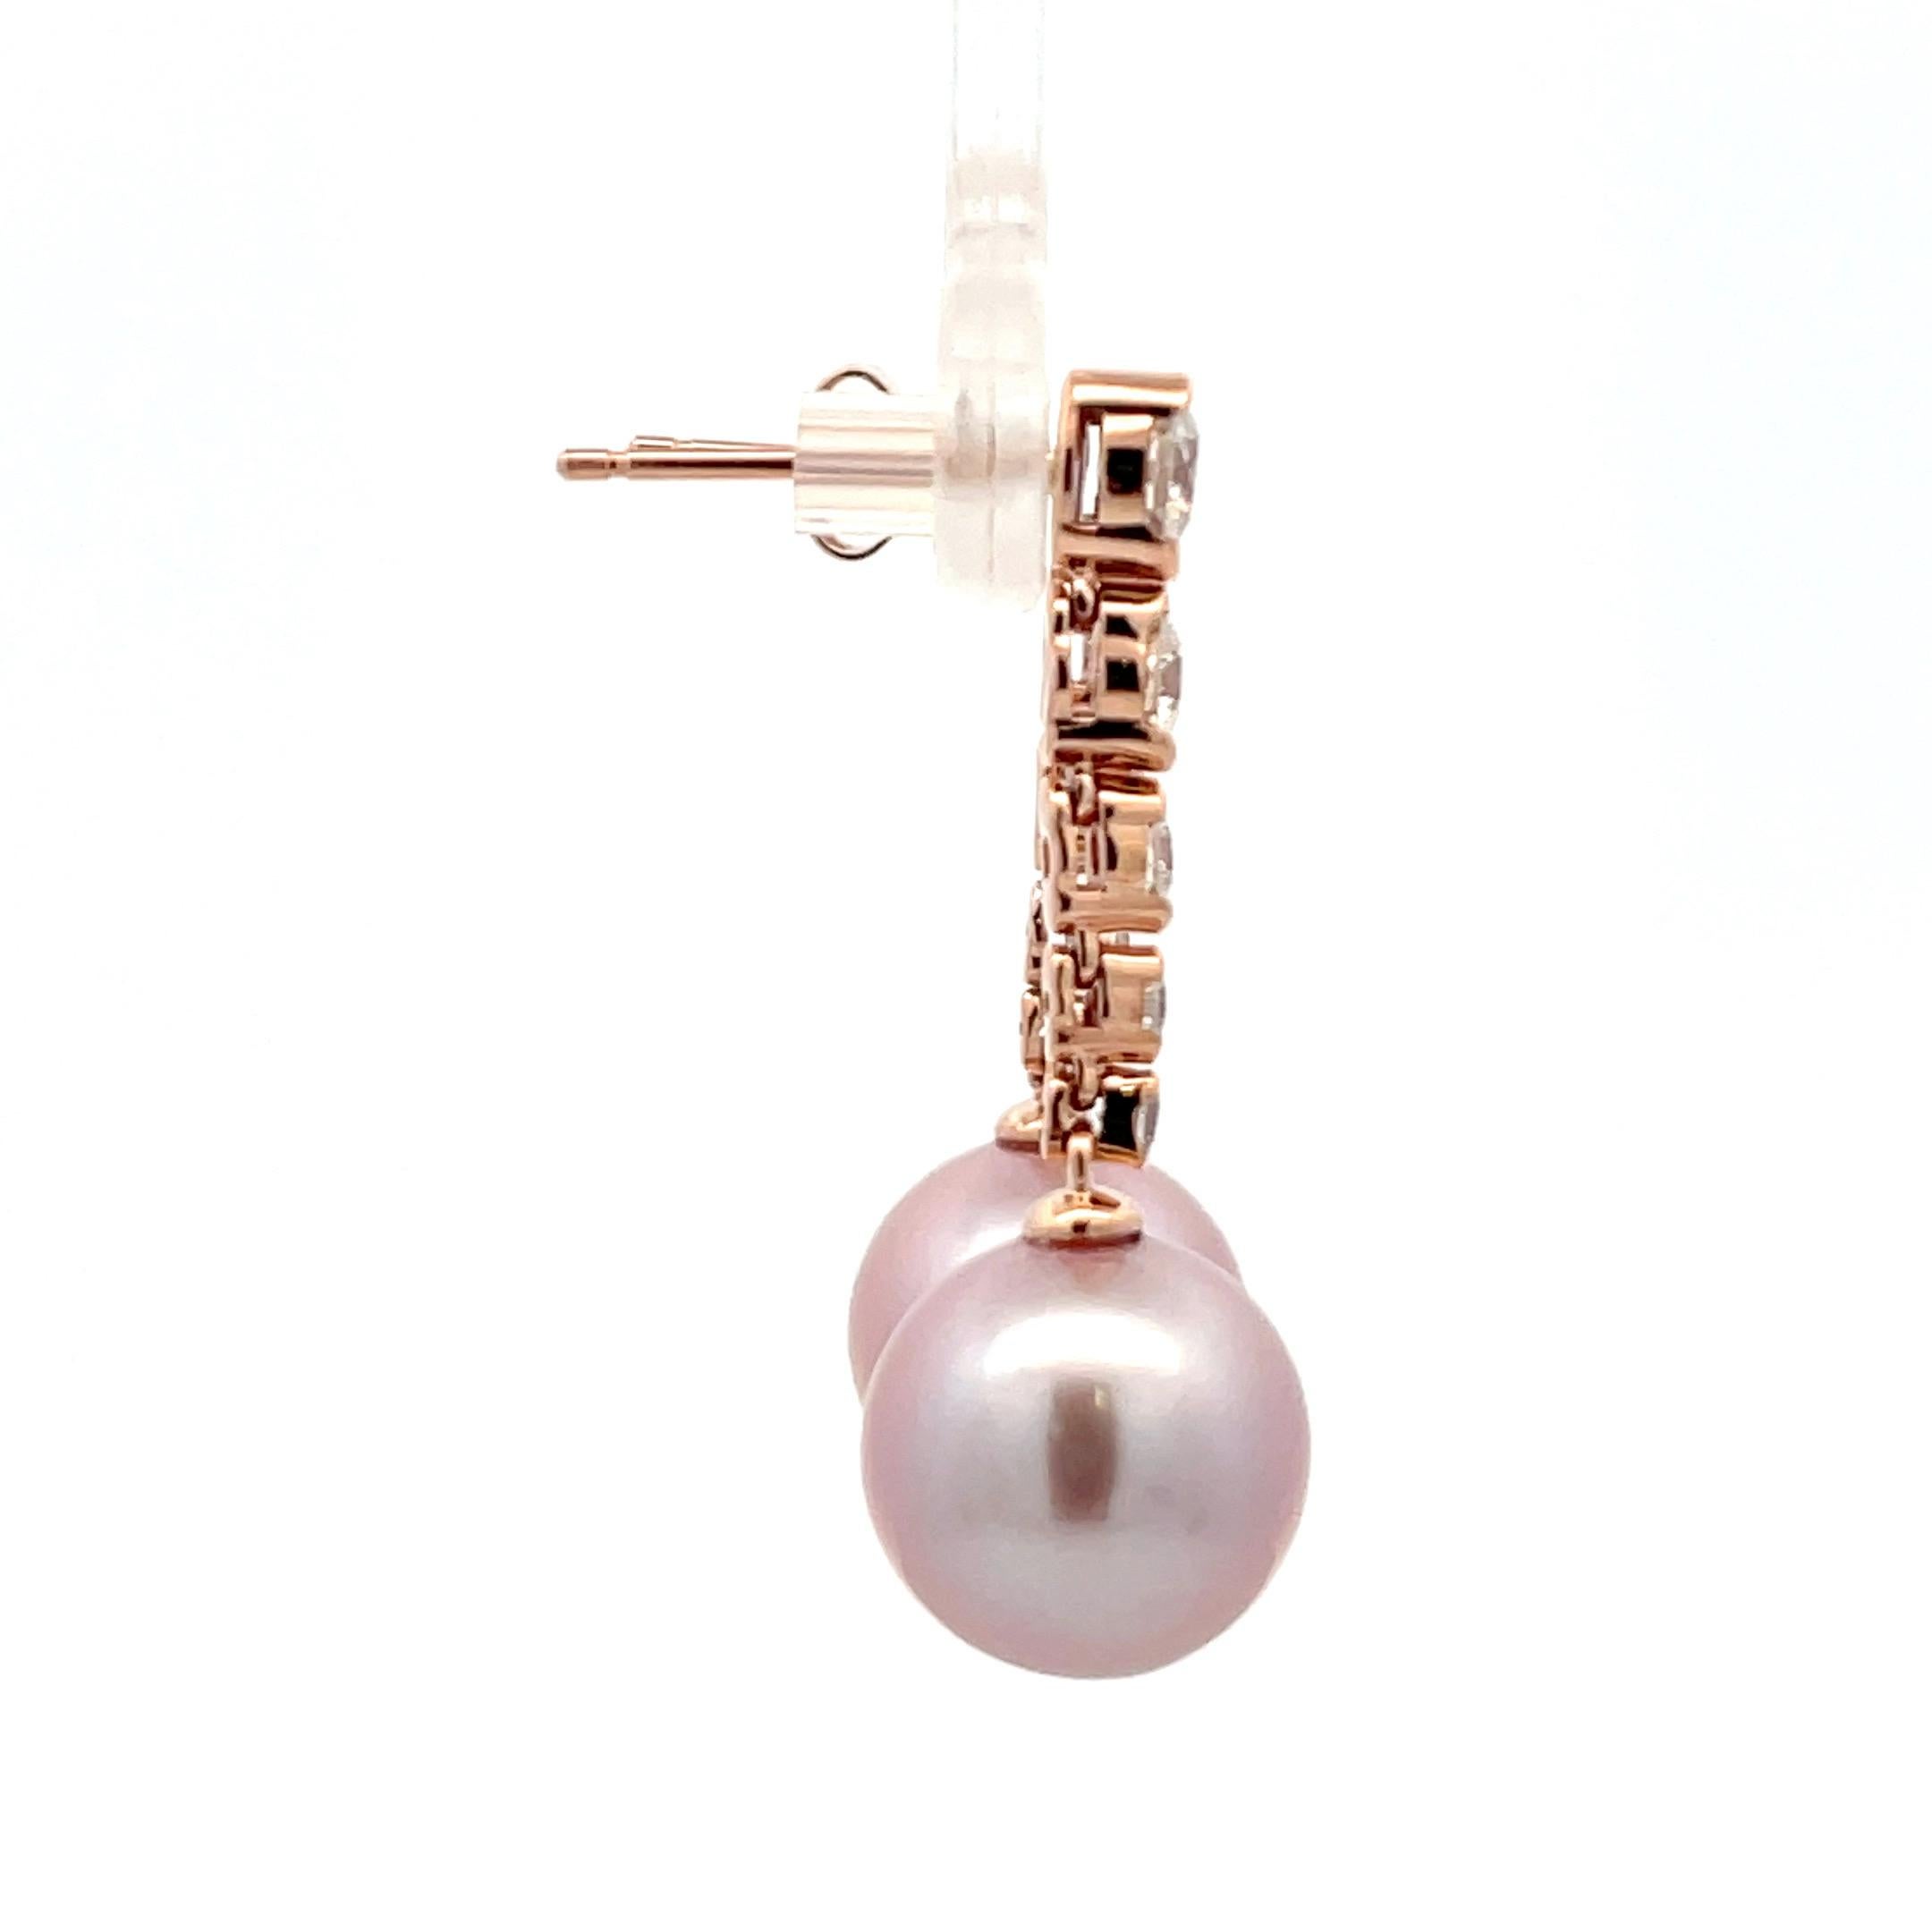 Boucles d'oreilles pendantes en or rose 14 carats comprenant 10 brillants ronds pesant 0,76 carotte et deux perles d'eau douce roses mesurant 10- 11 mm.
Couleur G
Clarity SI